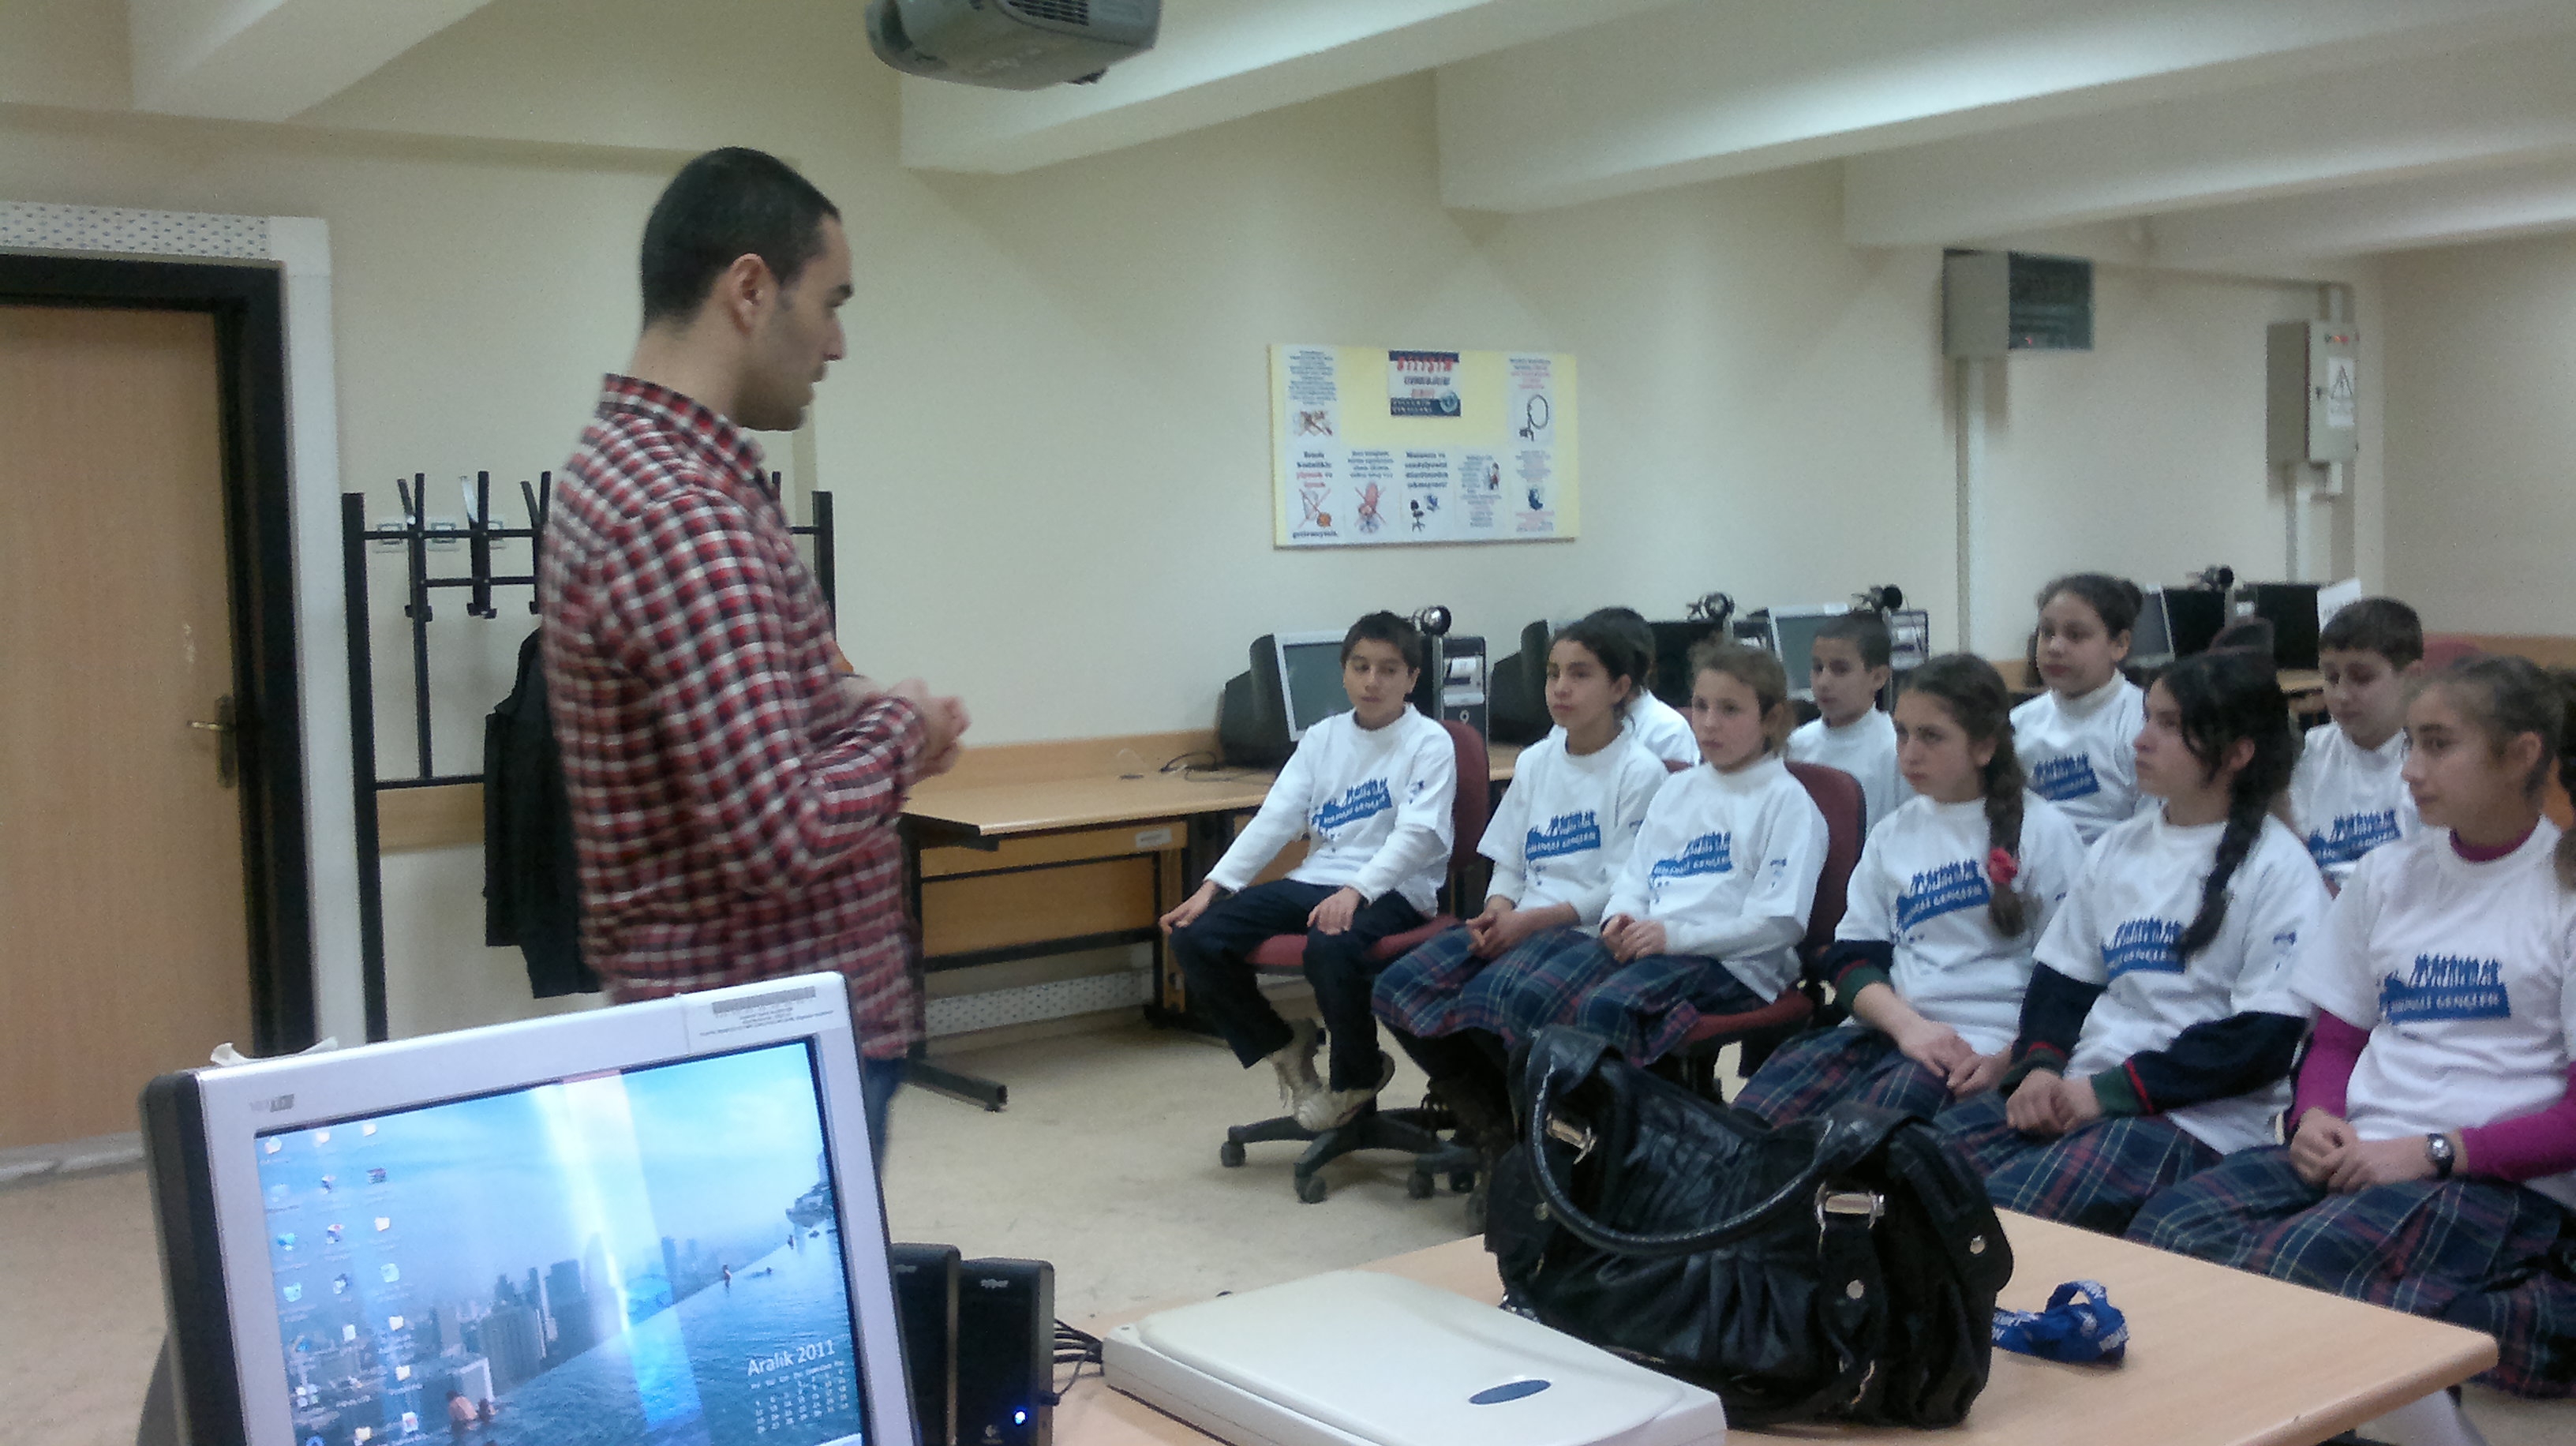 Bilinçli Gençler Derneği - Türkiye Bilinçli Gençlik Projesi - "BAĞIMLI OLMAYAN BİLİNÇLİ GENÇLİK" - Kabakdere İlköğretim Okulu - BALIKESİR